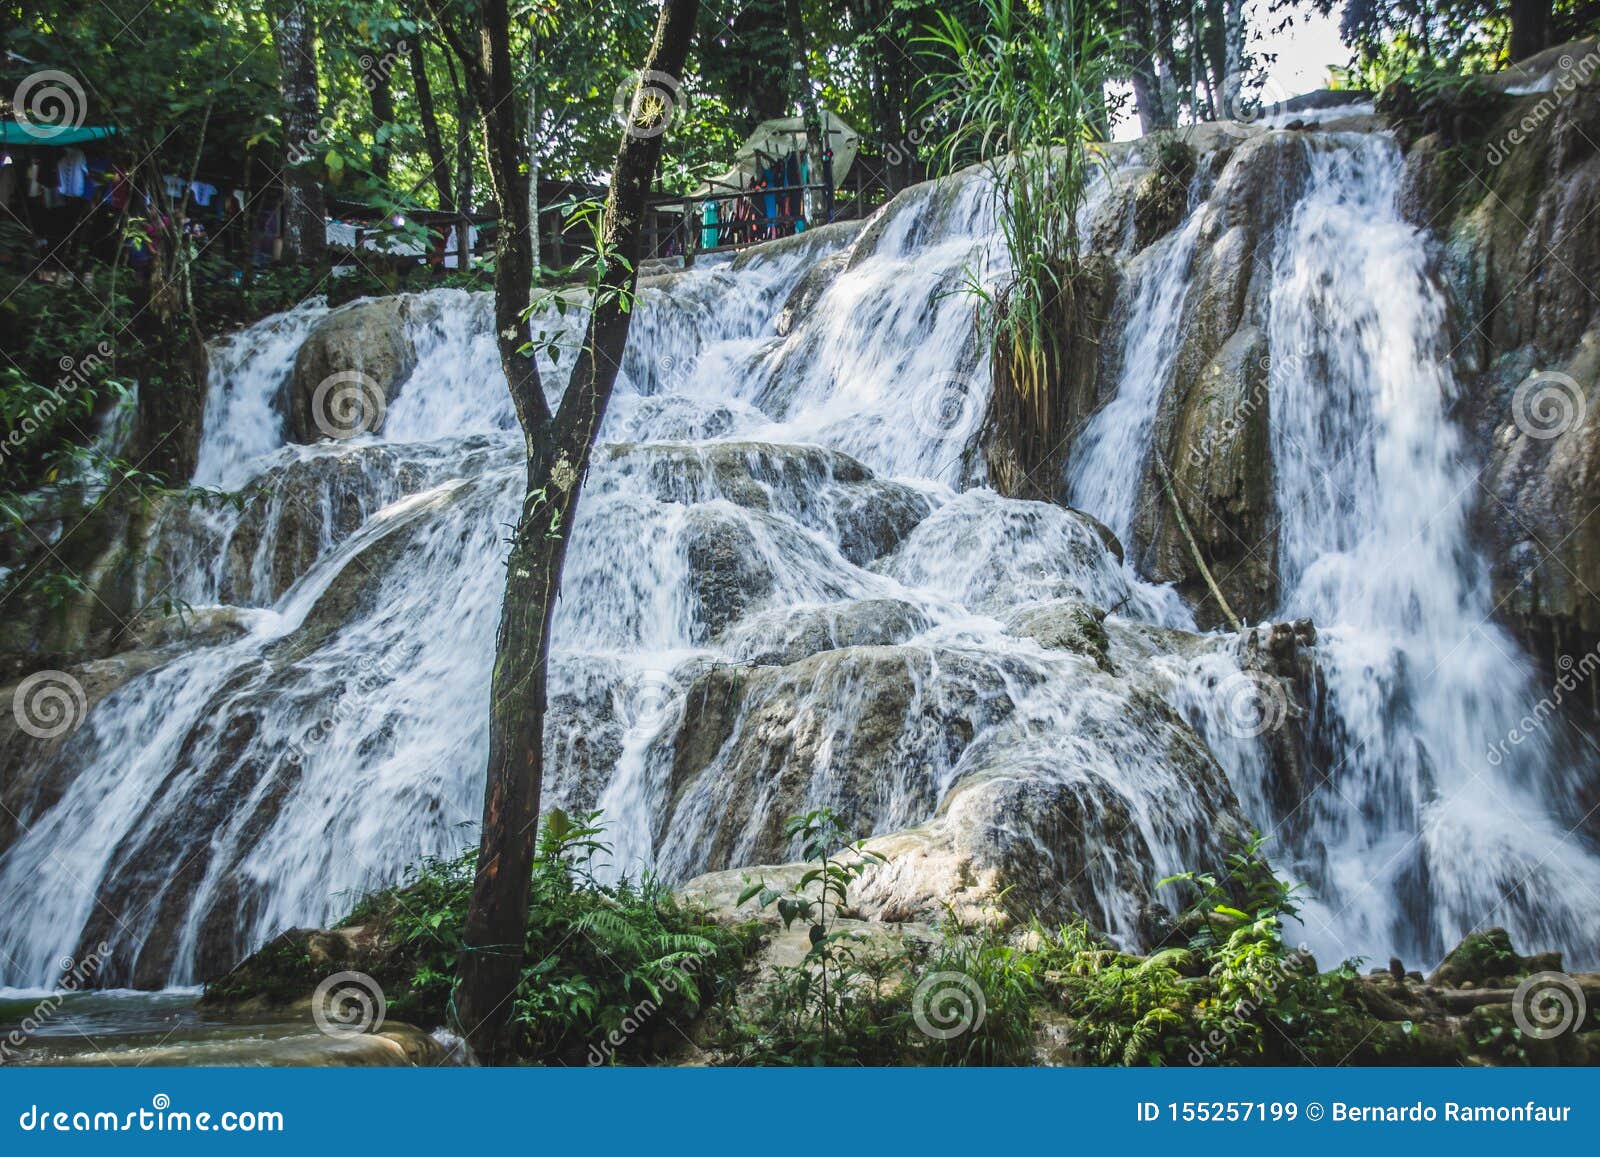 waterfalls of cascadas de agua azul chiapas mexico